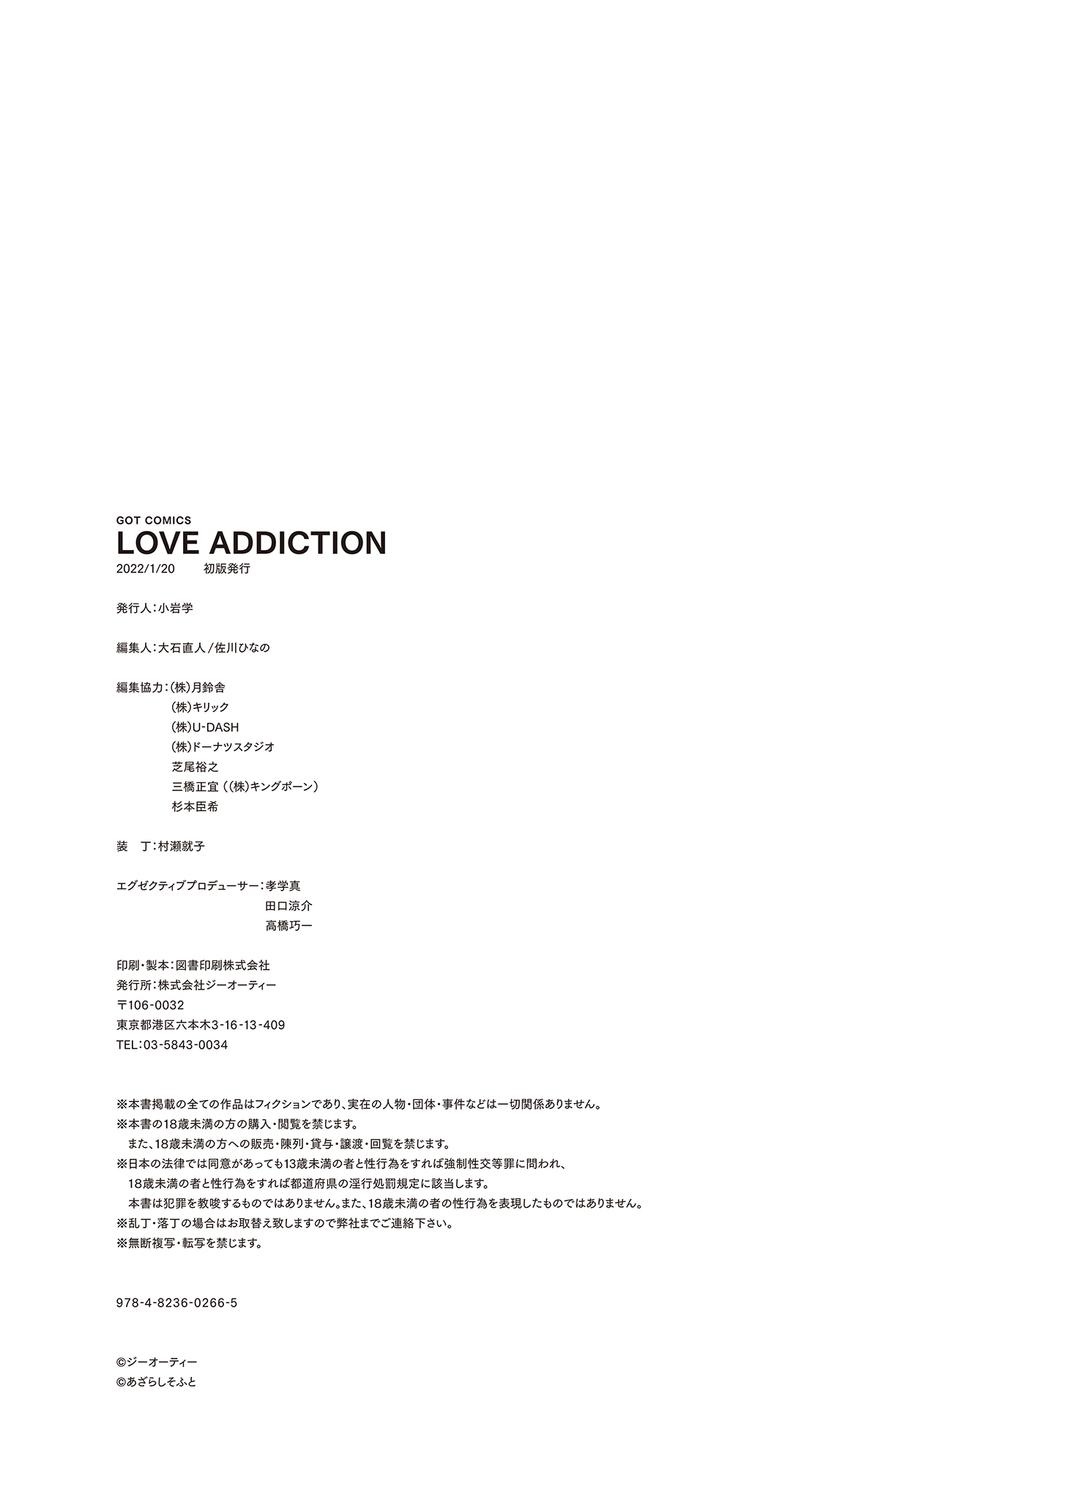 LOVE ADDICTION 303